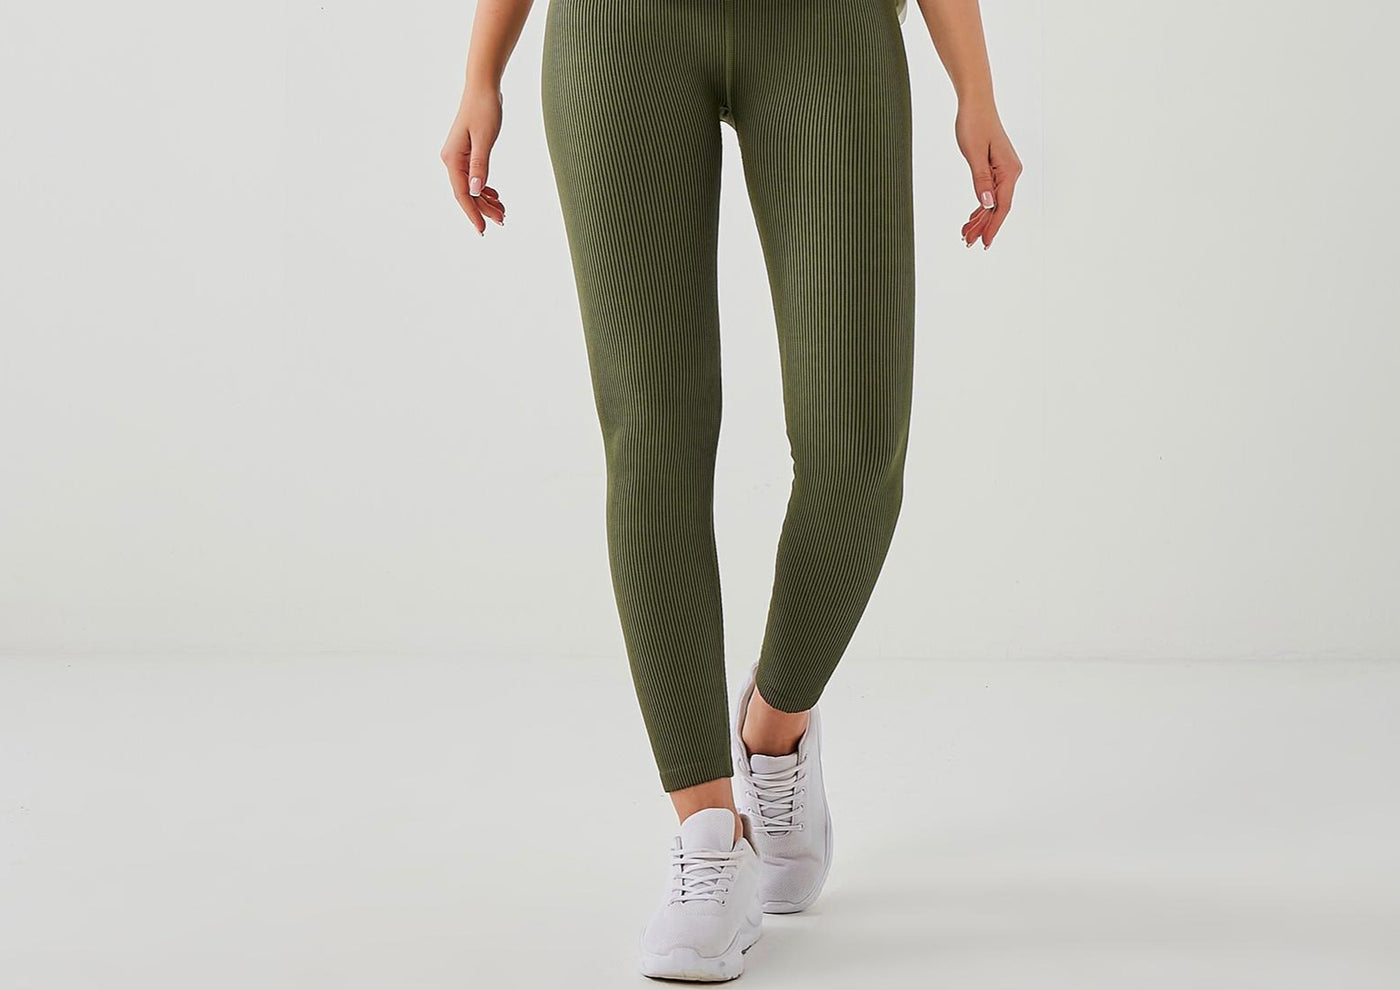 Calvin Klein women's leggings in olive green